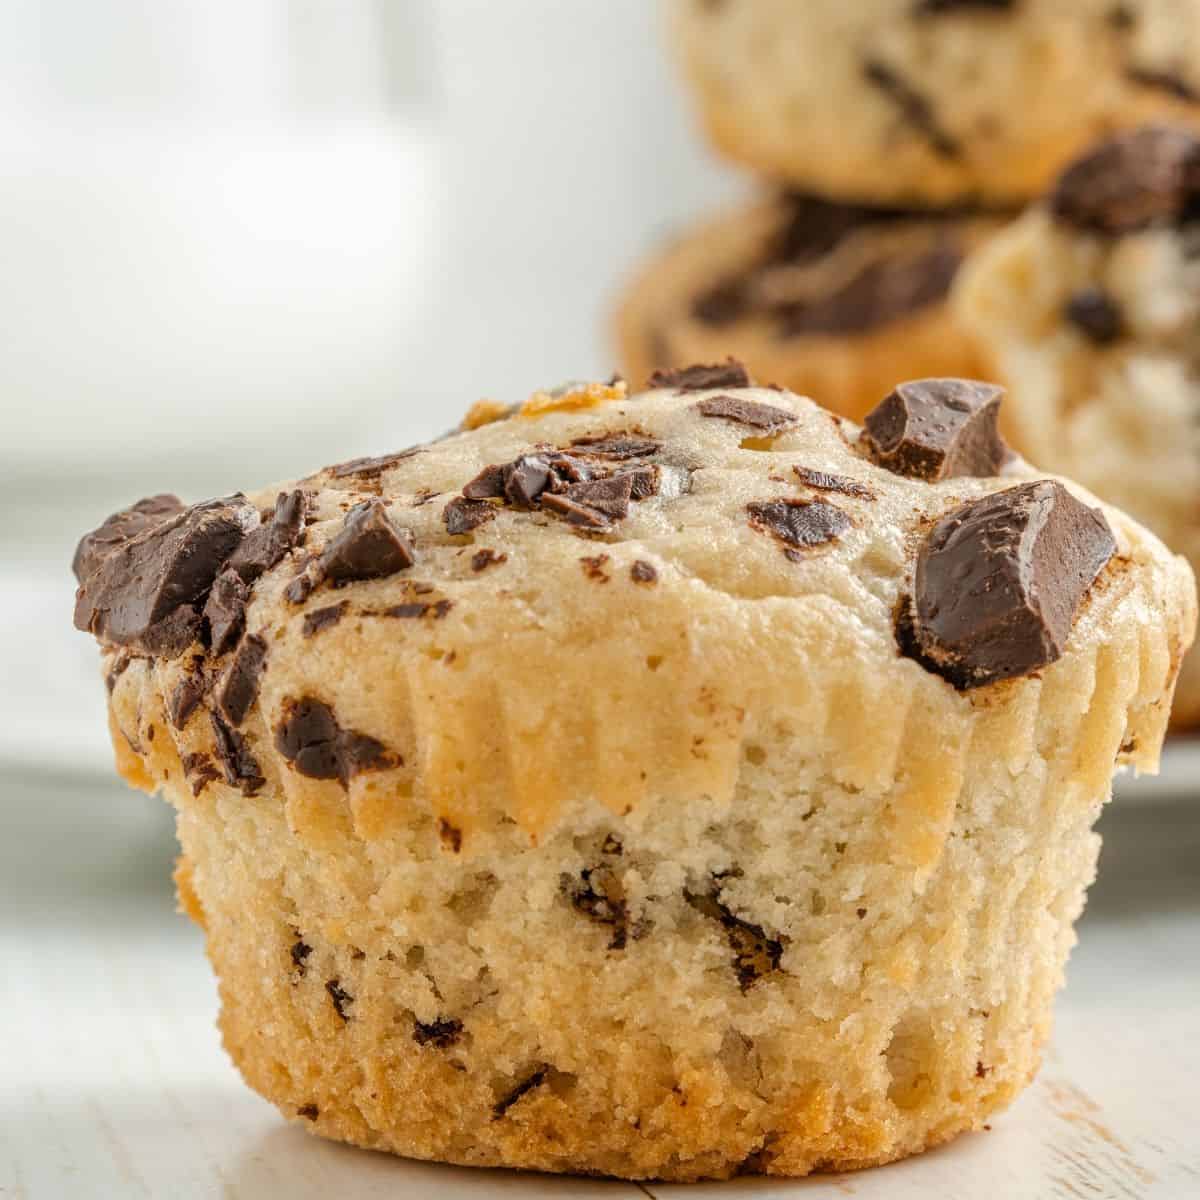 sugar free muffin recipes